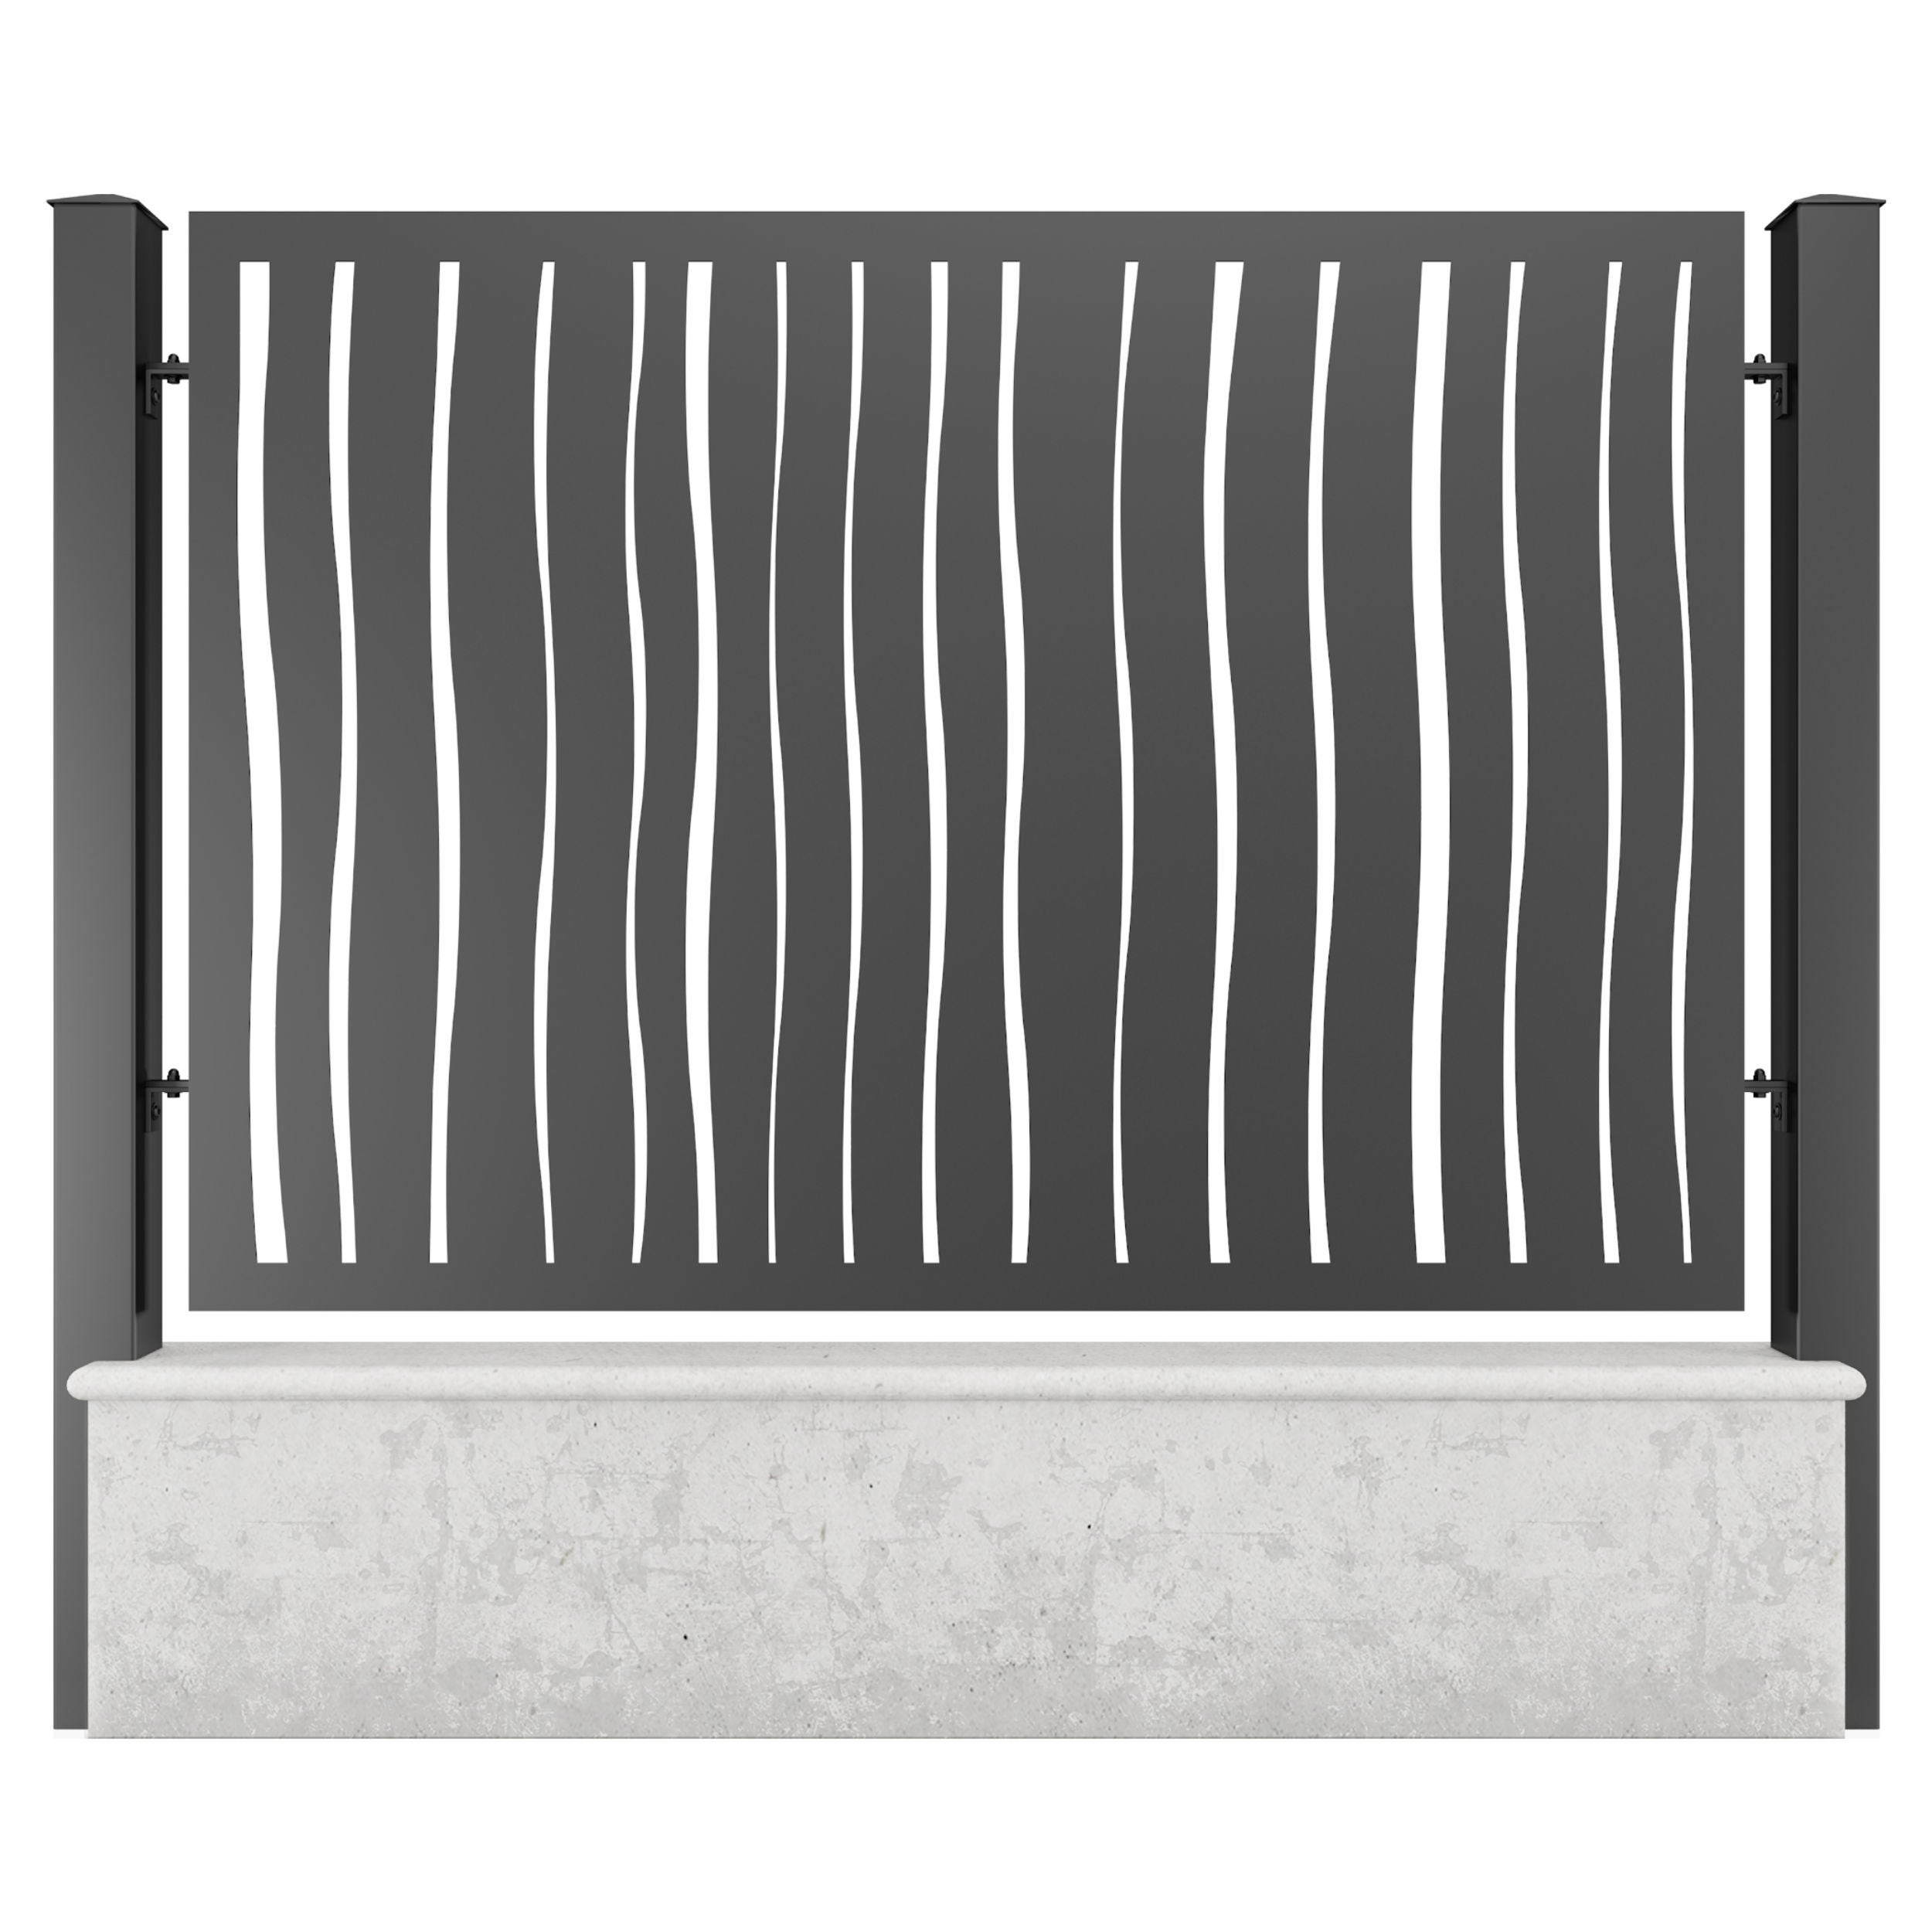 Panou metalic gard din tabla decupata G26B, otel, negru (RAL 9005), 2000 x 1500 mm